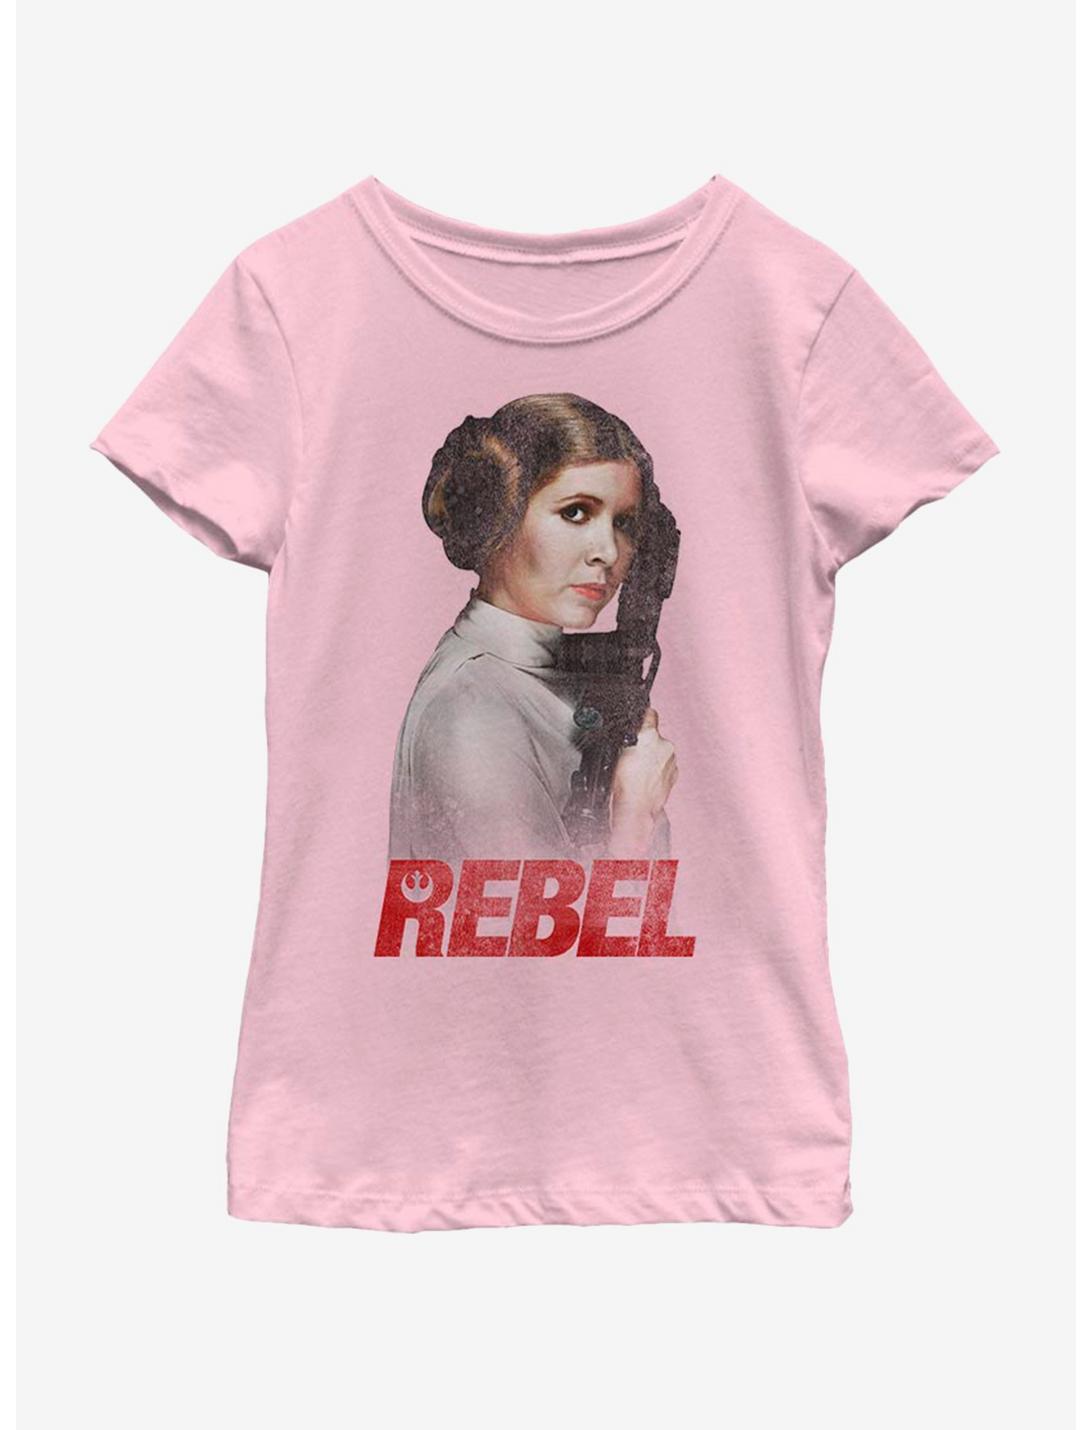 Star Wars Leia Rebel Youth Girls T-Shirt, PINK, hi-res